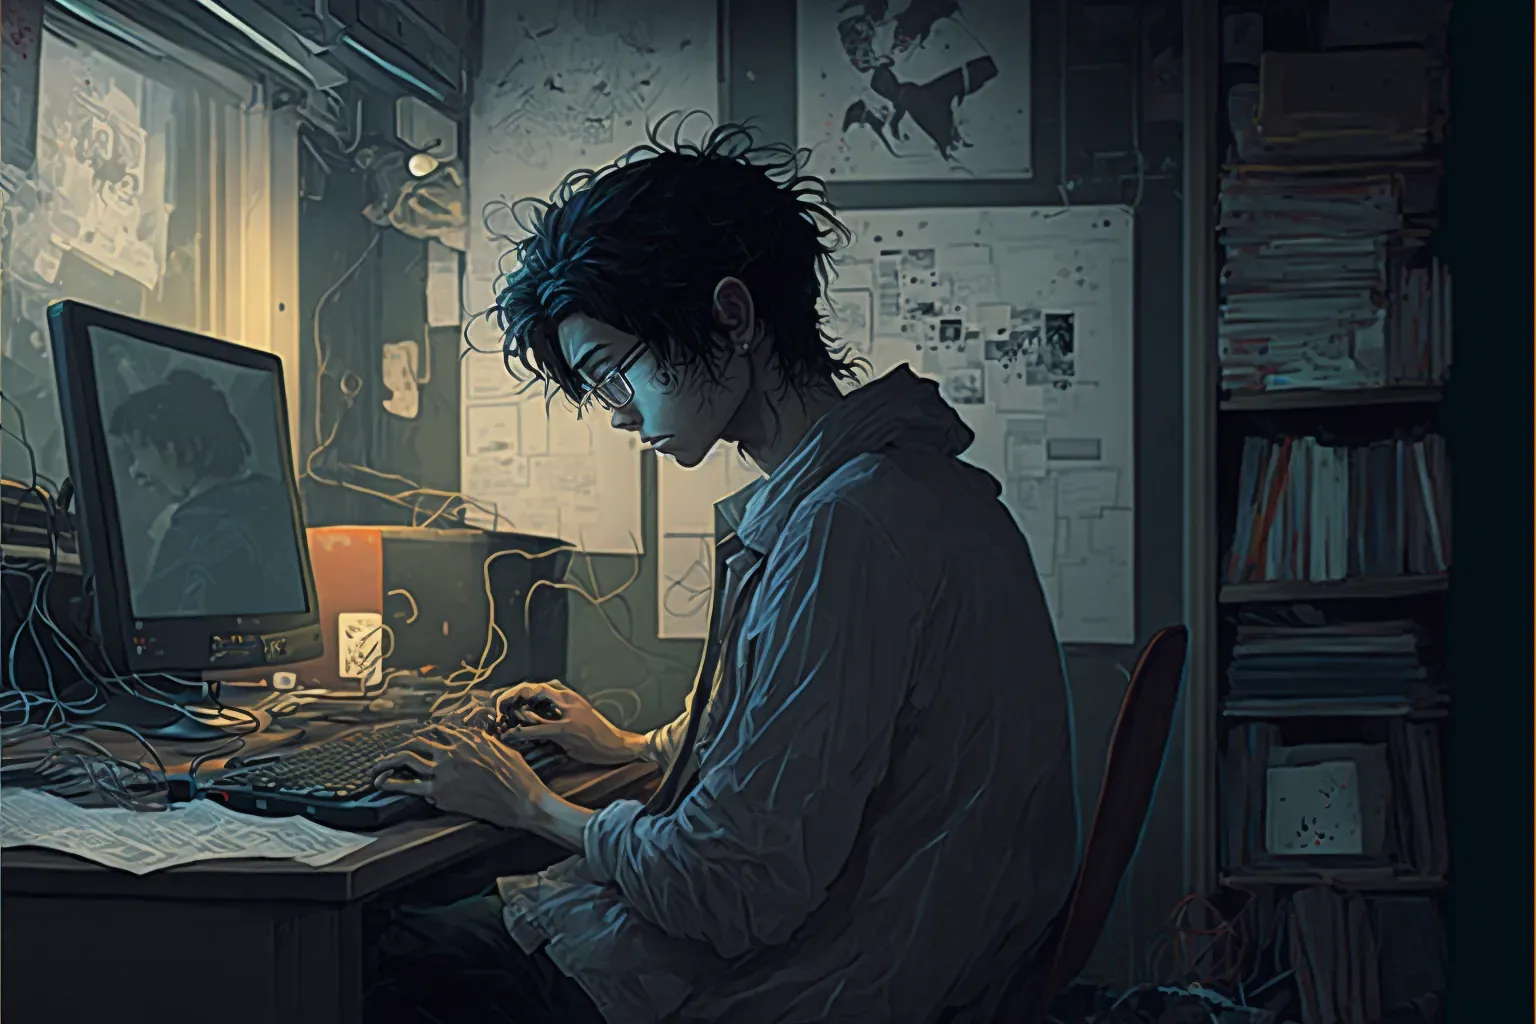 Osoba wycofana społecznie, japoński hikikomori siedzący przy komputerze